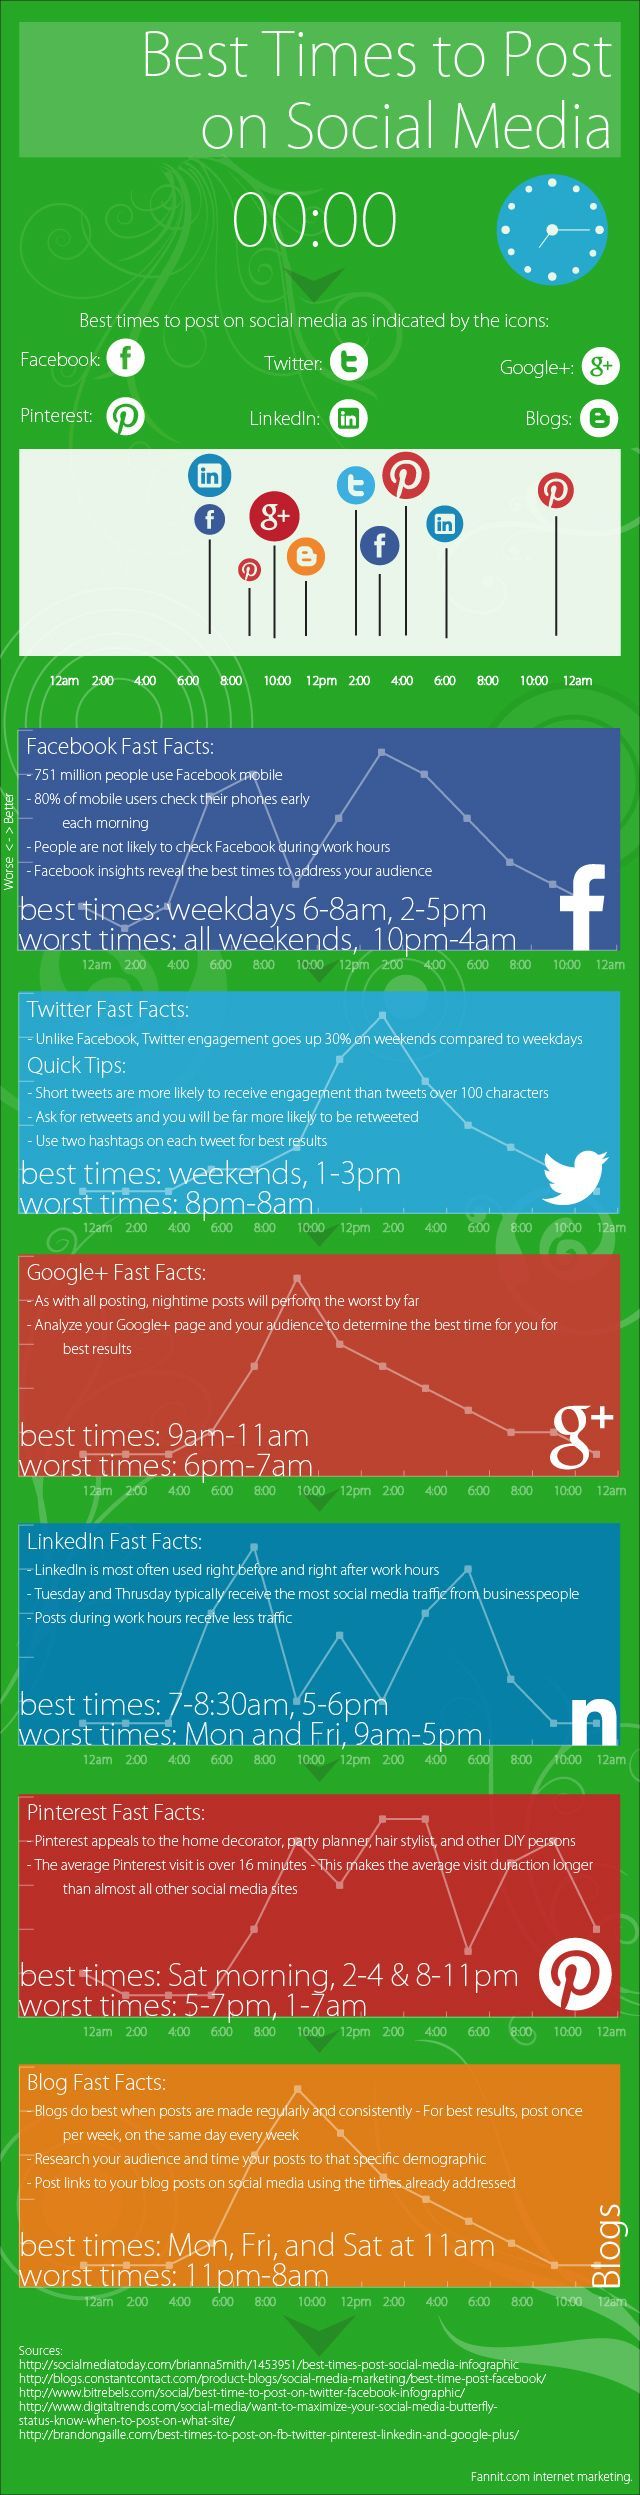 Mejores horas para publicar en las redes sociales. Infografía en inglés. Título original: Best Times to Post on Social Media